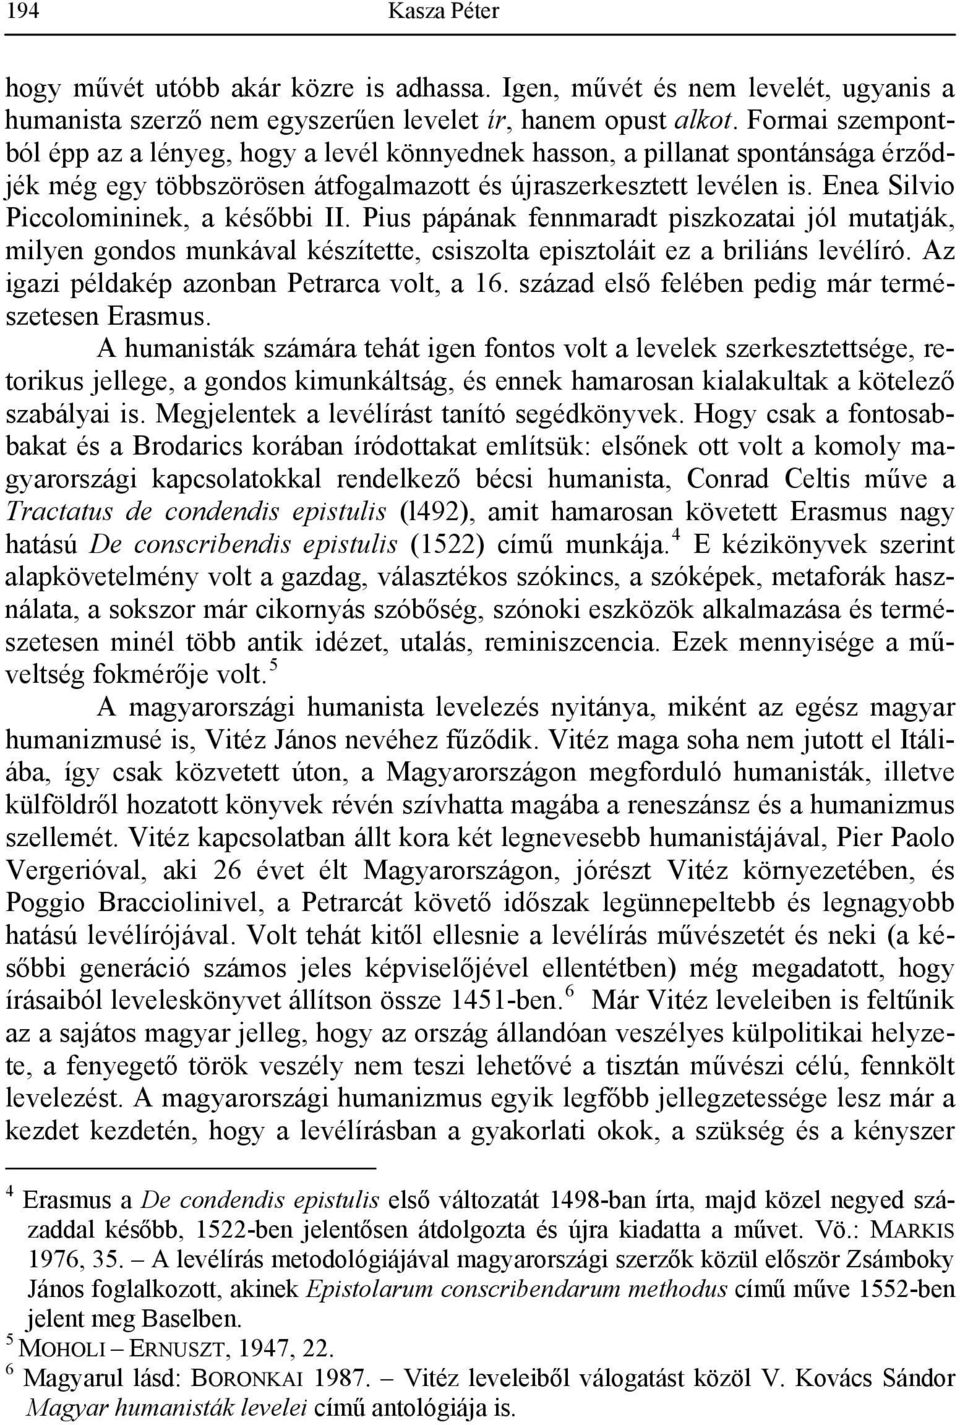 Enea Silvio Piccolomininek, a későbbi II. Pius pápának fennmaradt piszkozatai jól mutatják, milyen gondos munkával készítette, csiszolta episztoláit ez a briliáns levélíró.